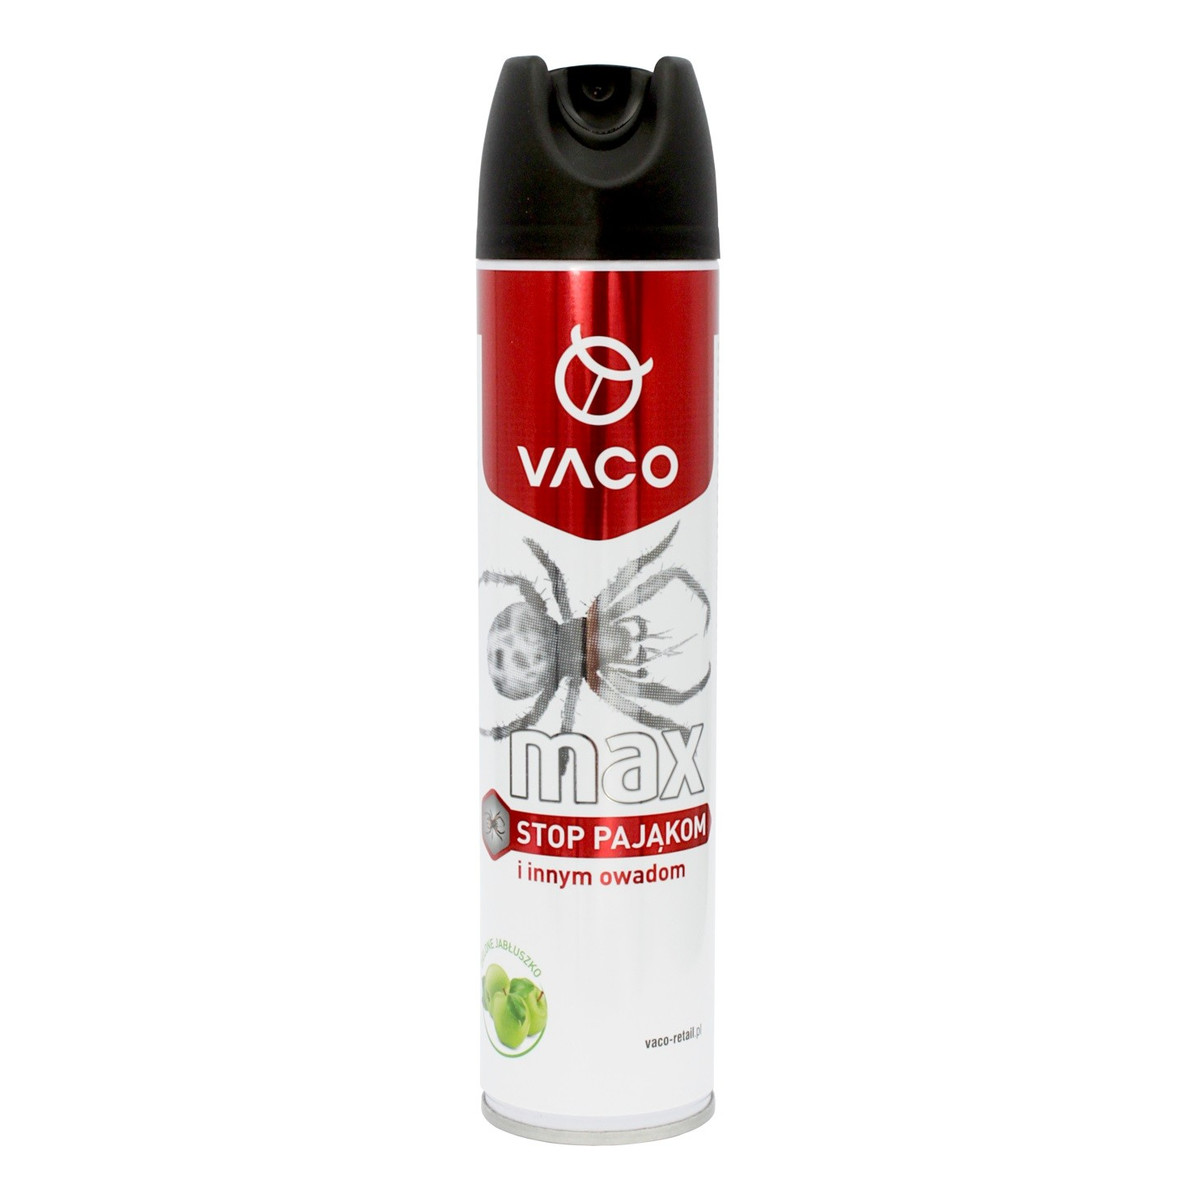 Vaco Spray na pająki& 300ml